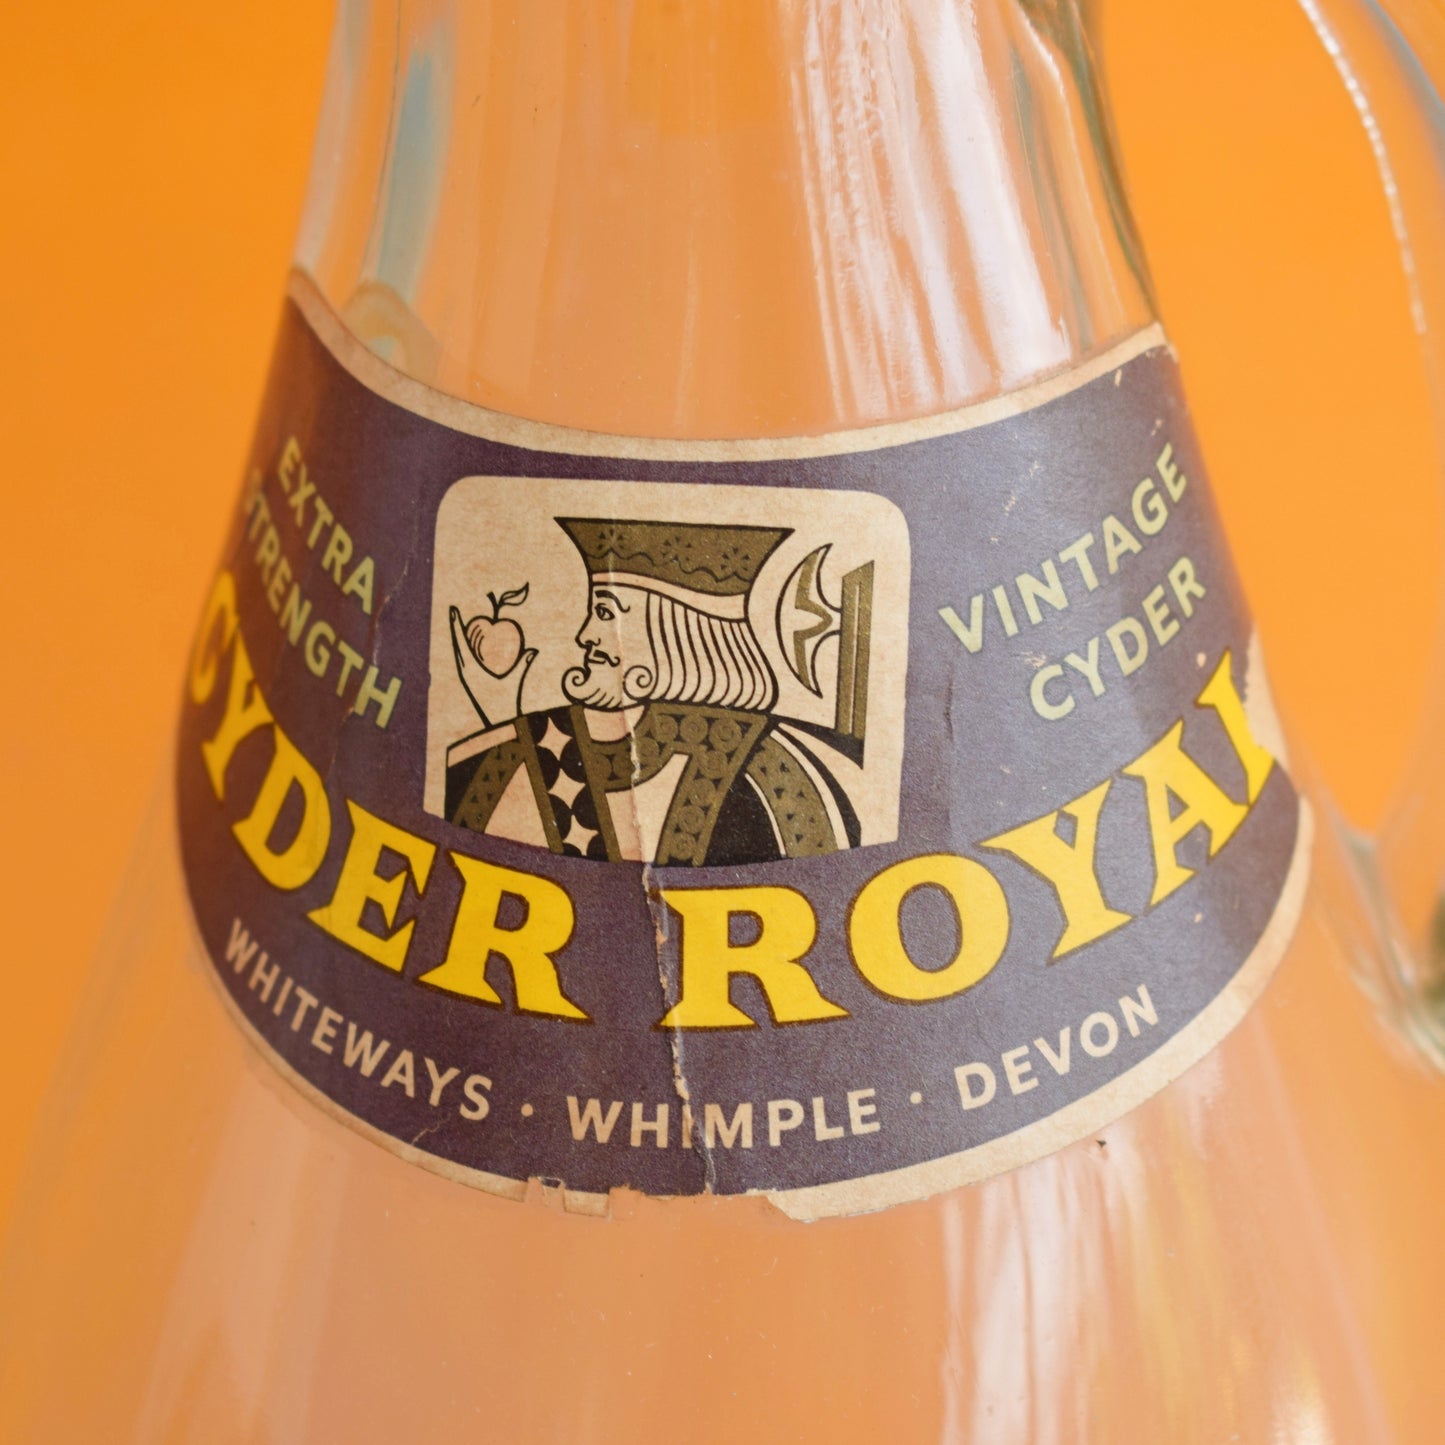 Vintage 1960s Large Cyder Royal Bottle- Devon - Cider